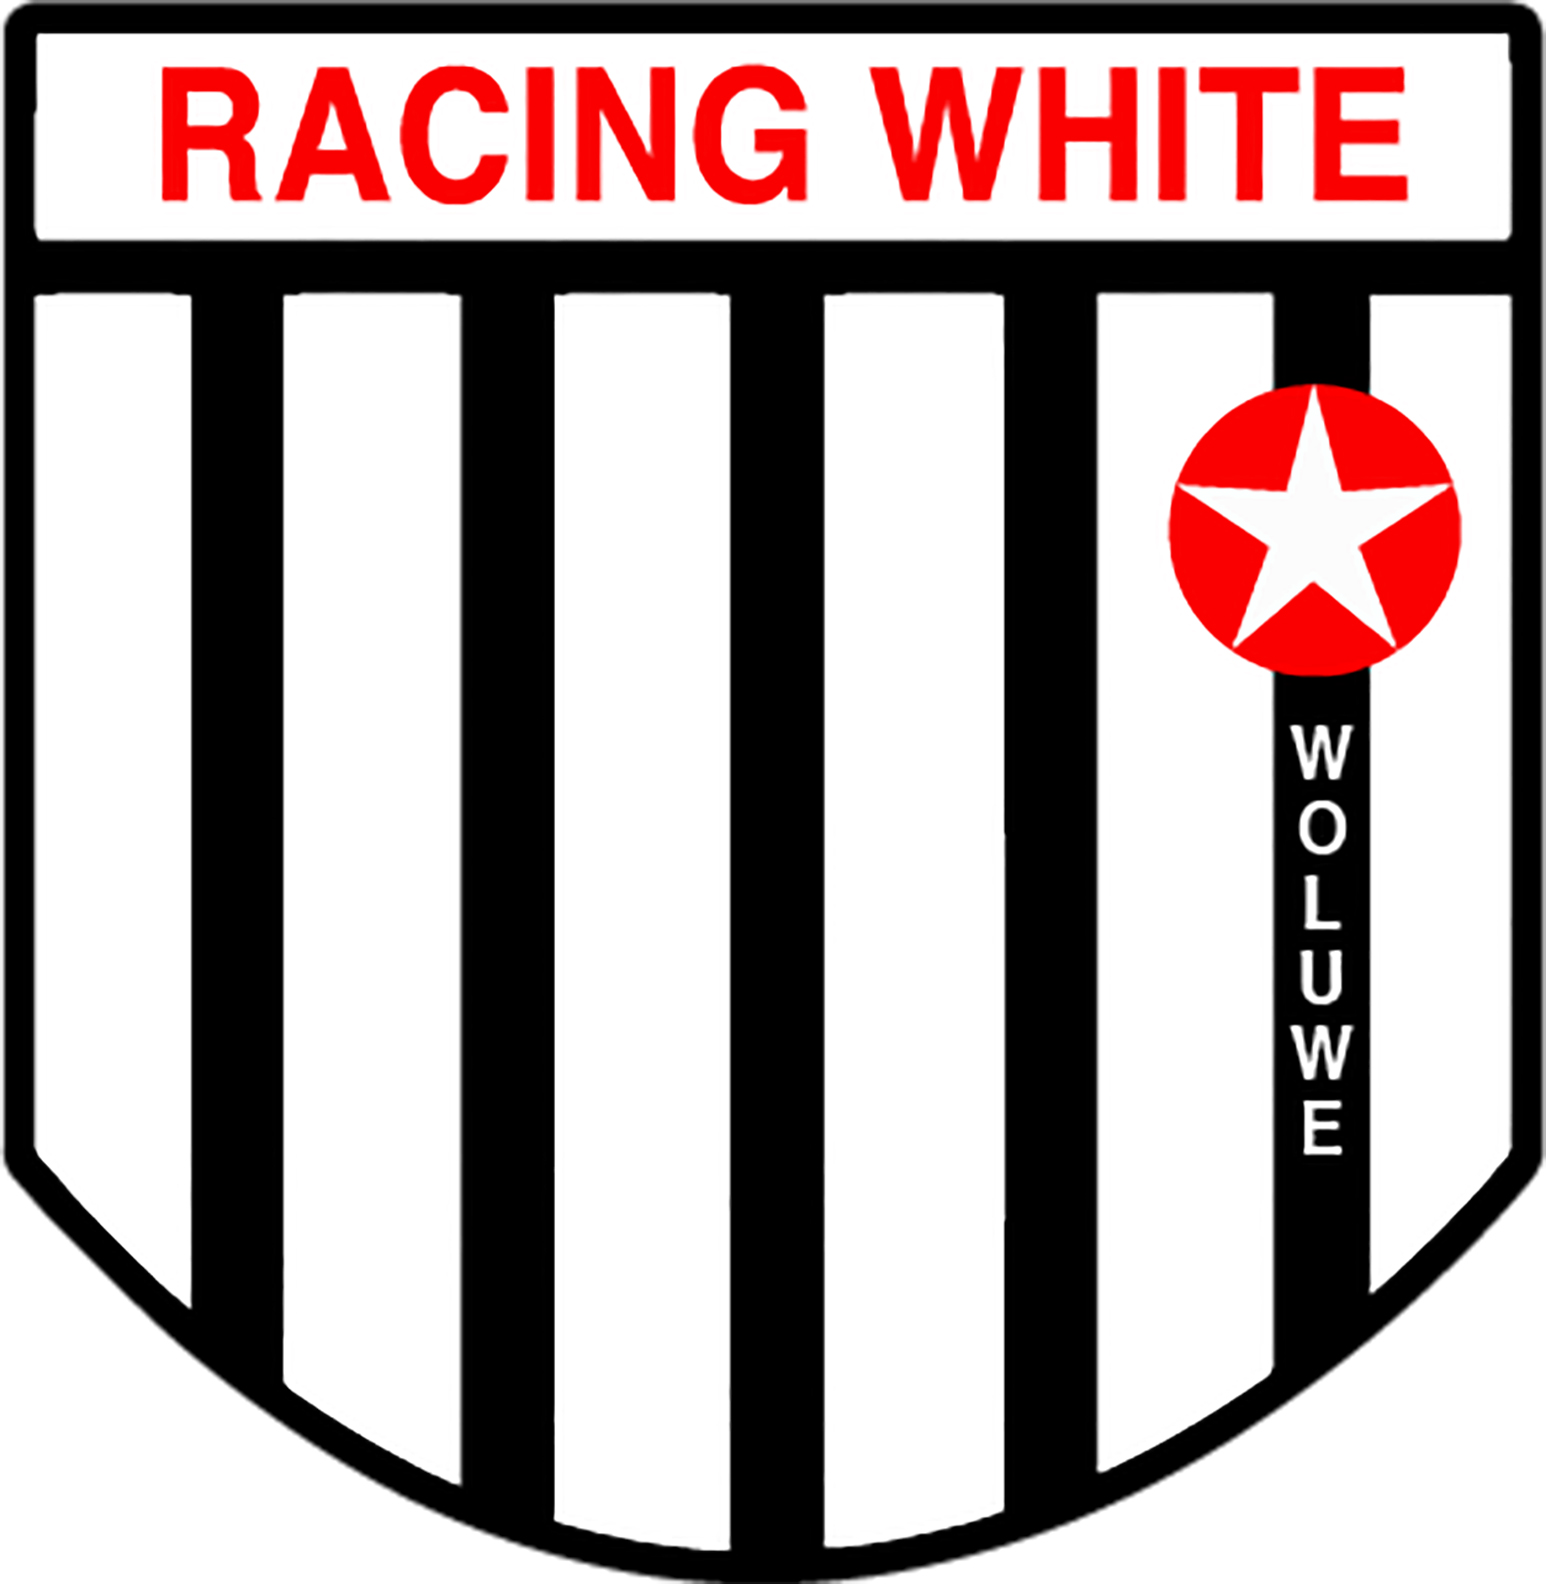 7 - Racing White Woluwe